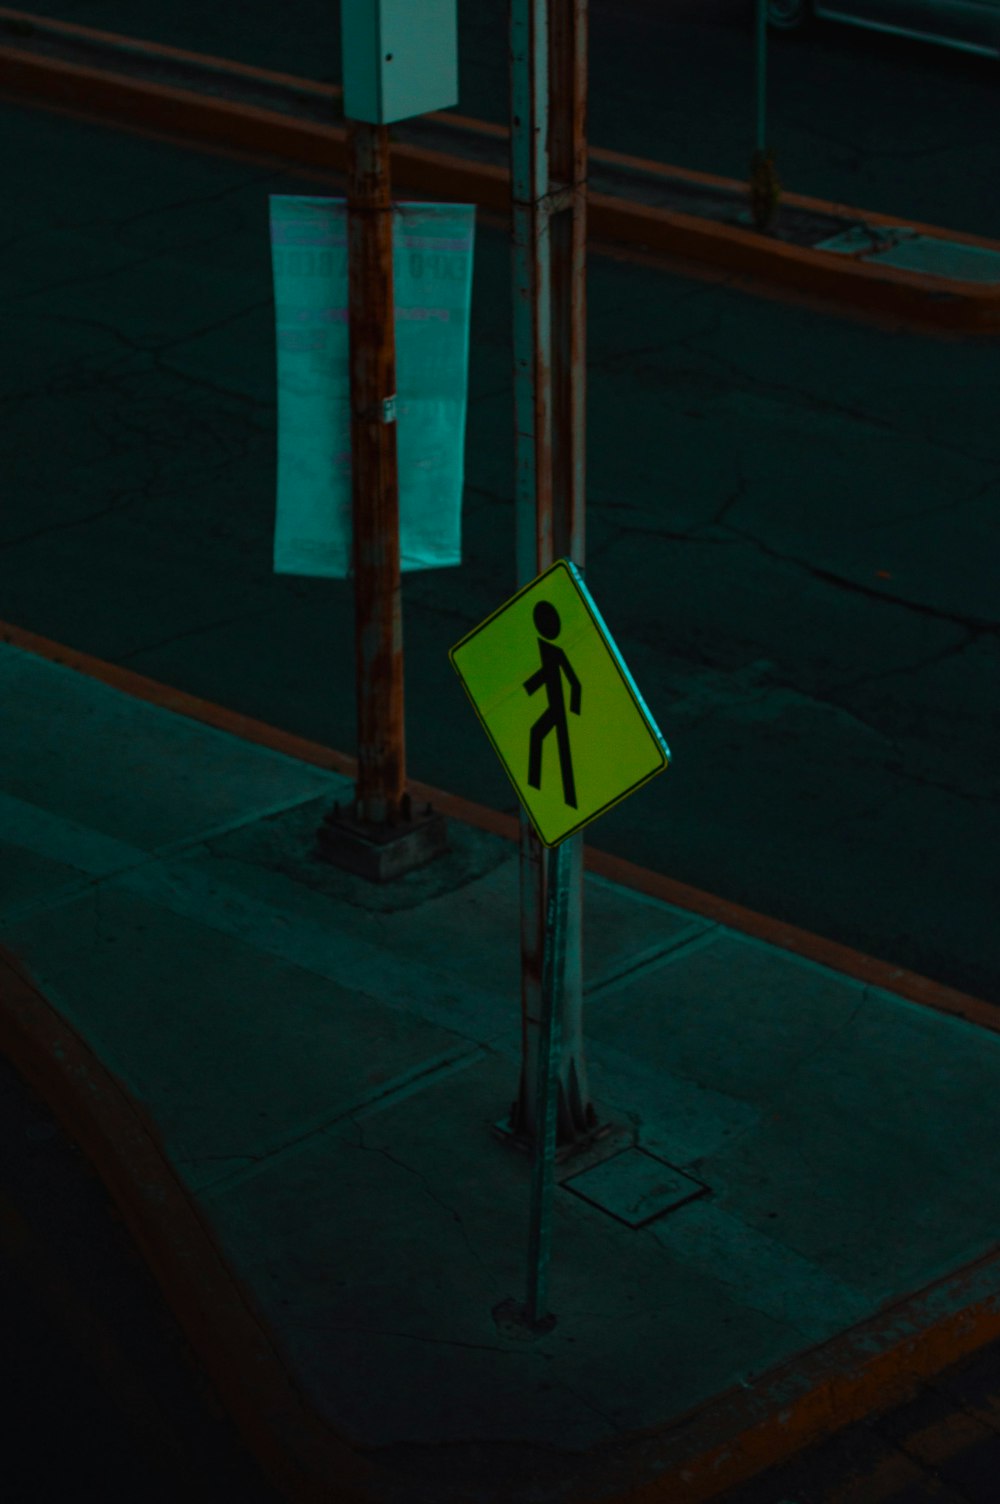 um sinal de travessia de pedestres em uma rua da cidade